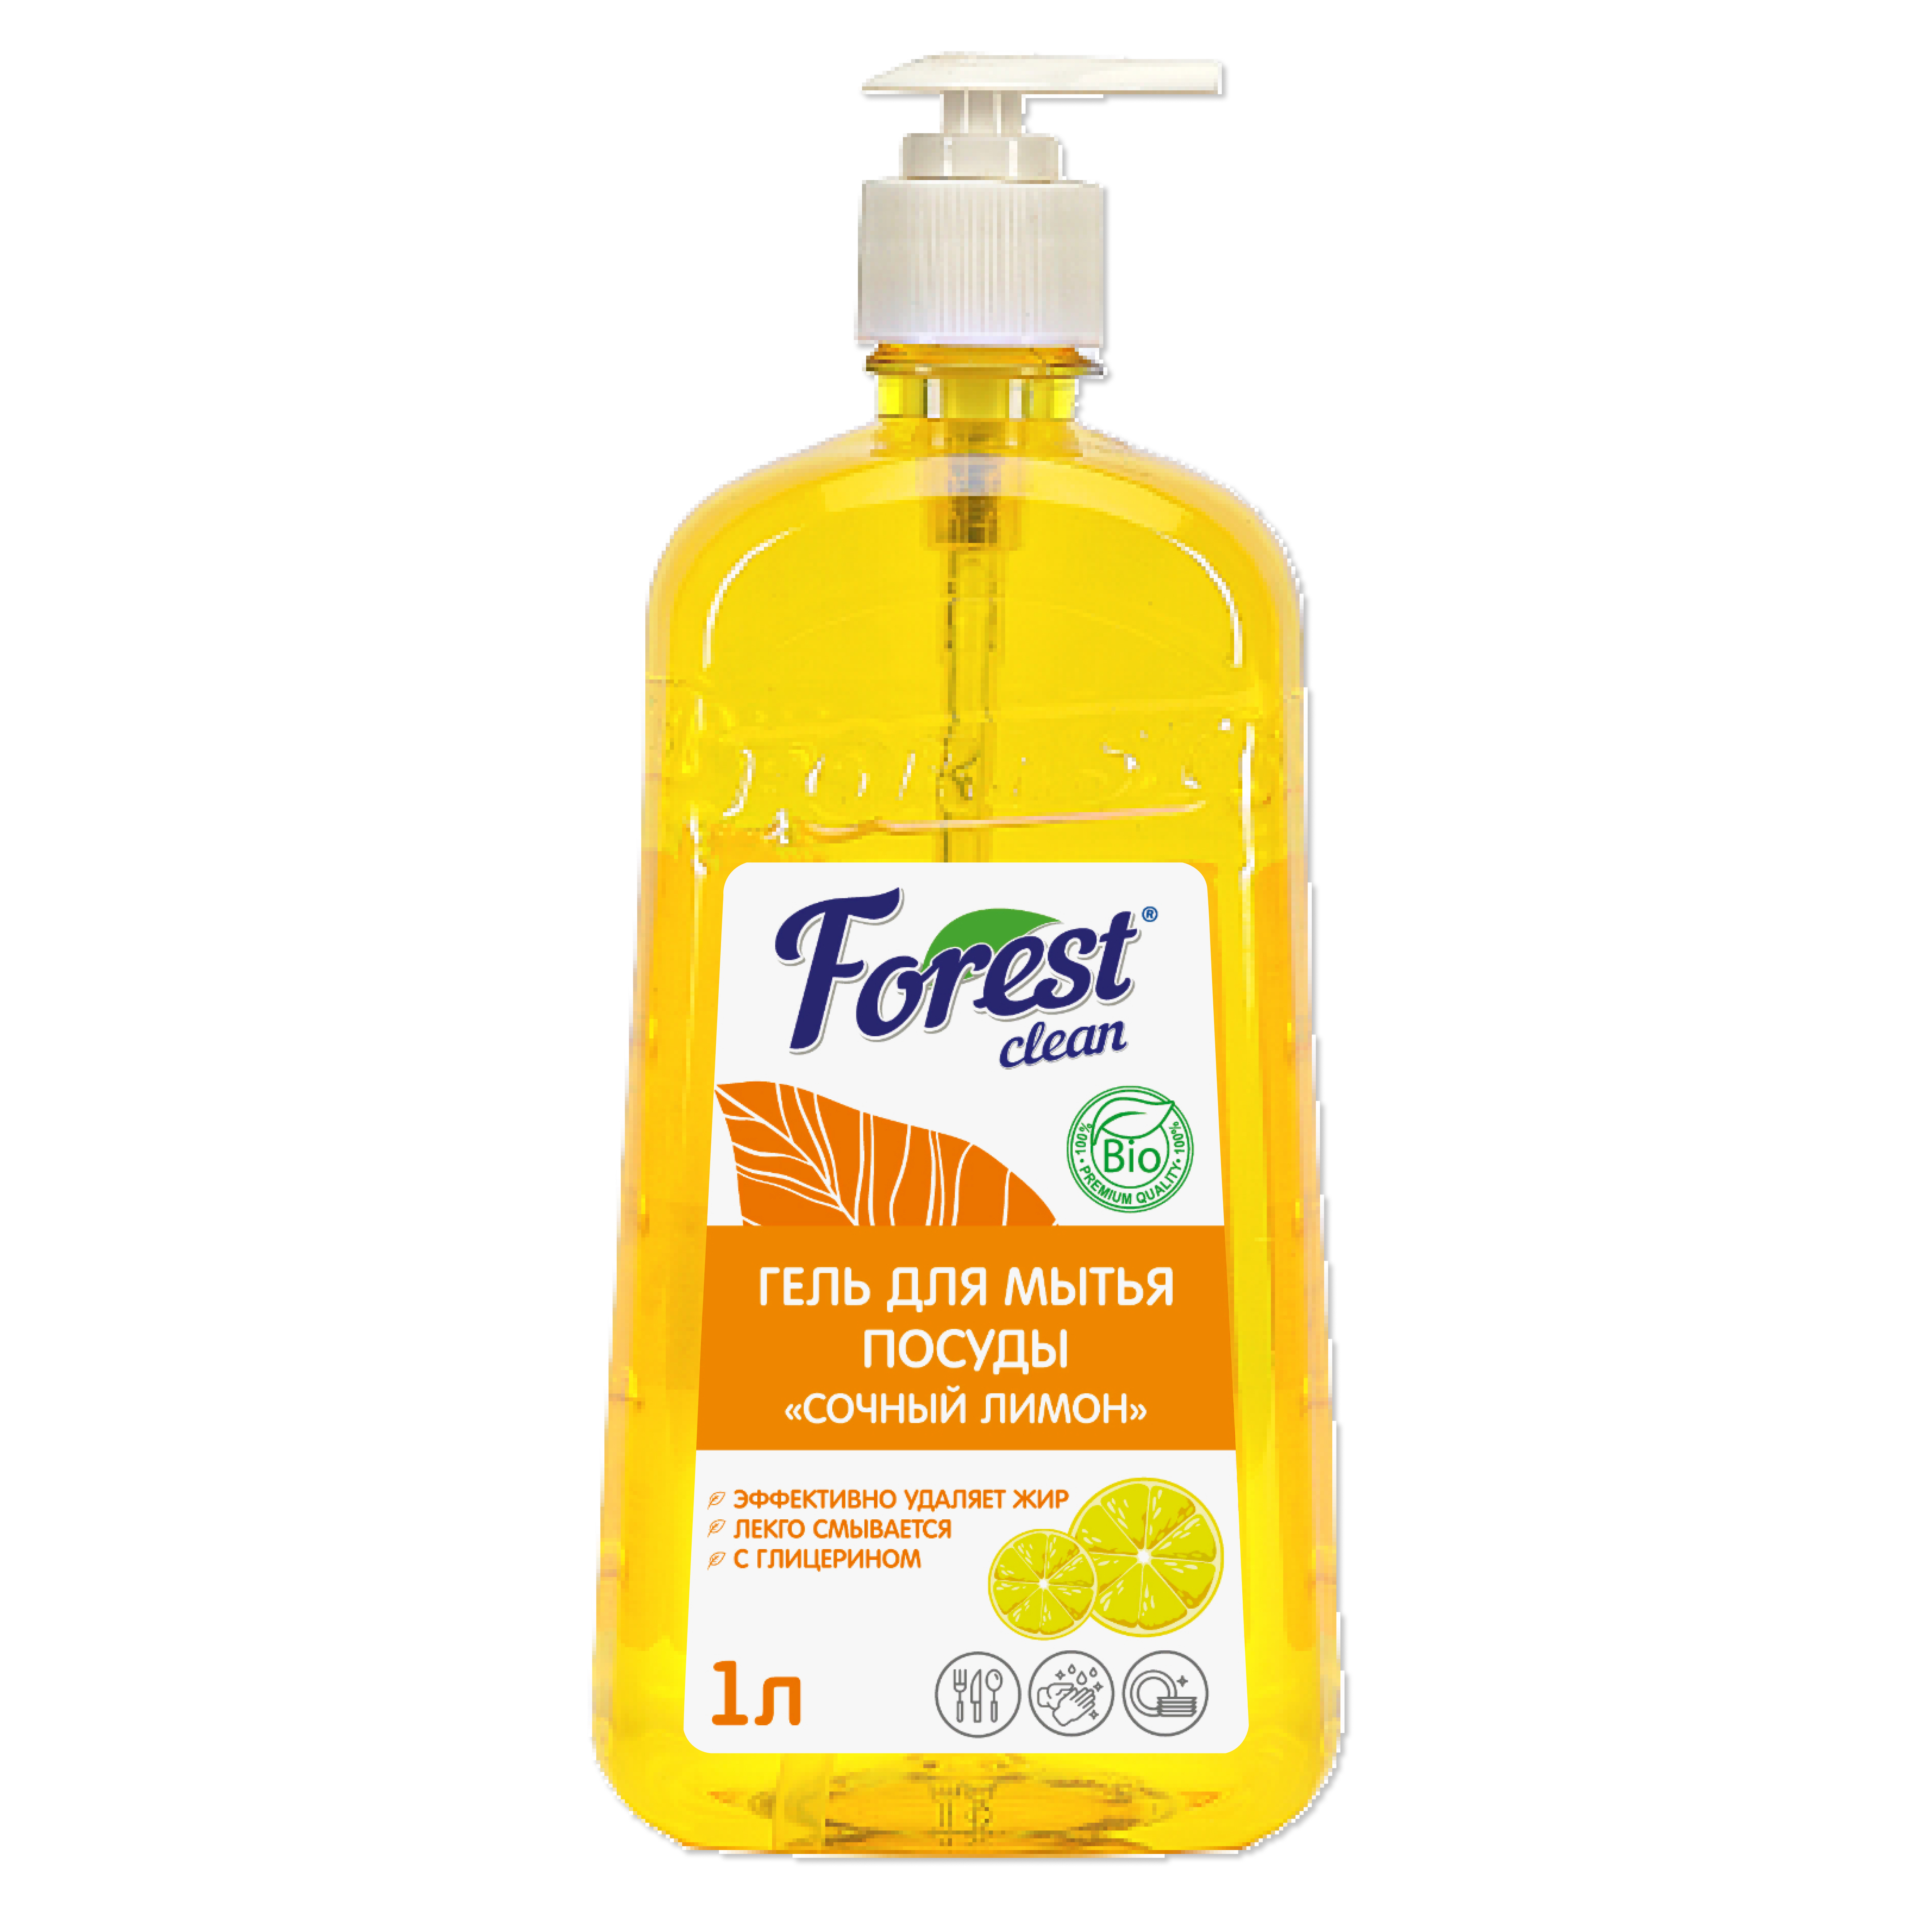 Forest Clean гель для мытья посуды "Сочный Лимон" 1 л. ПЭТ с дозатором 